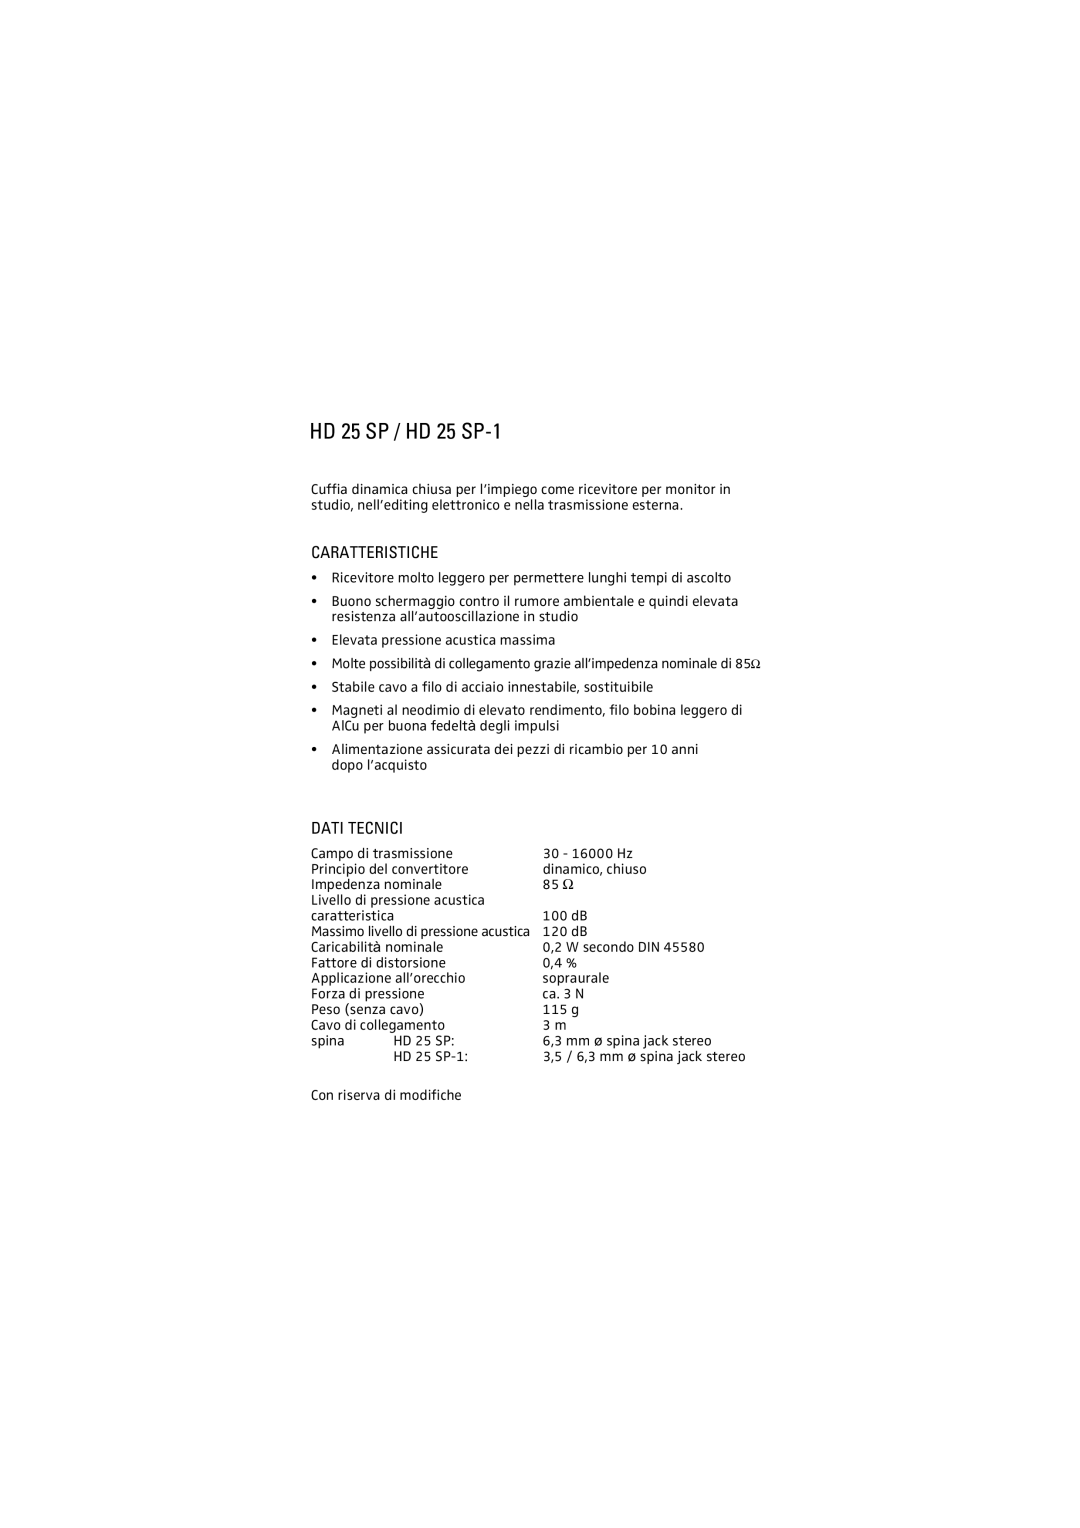 Sennheiser manual Caratteristiche, Dati Tecnici, HD 25 SP / HD 25 SP-1 